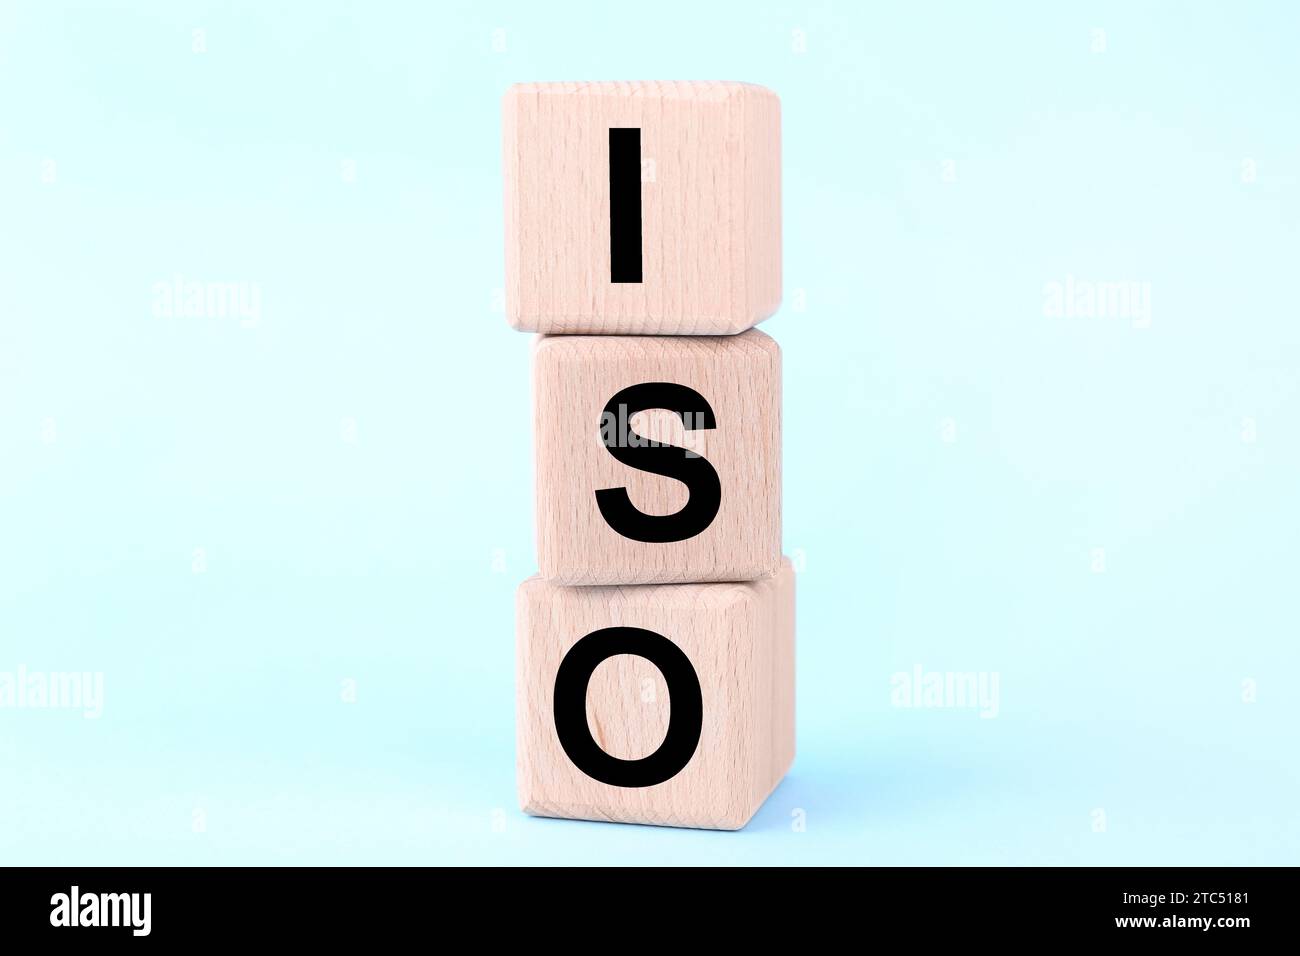 International Organization for Standardization (Organizzazione internazionale per la standardizzazione). Cubi in legno con abbreviazione ISO su sfondo azzurro chiaro, primo piano Foto Stock